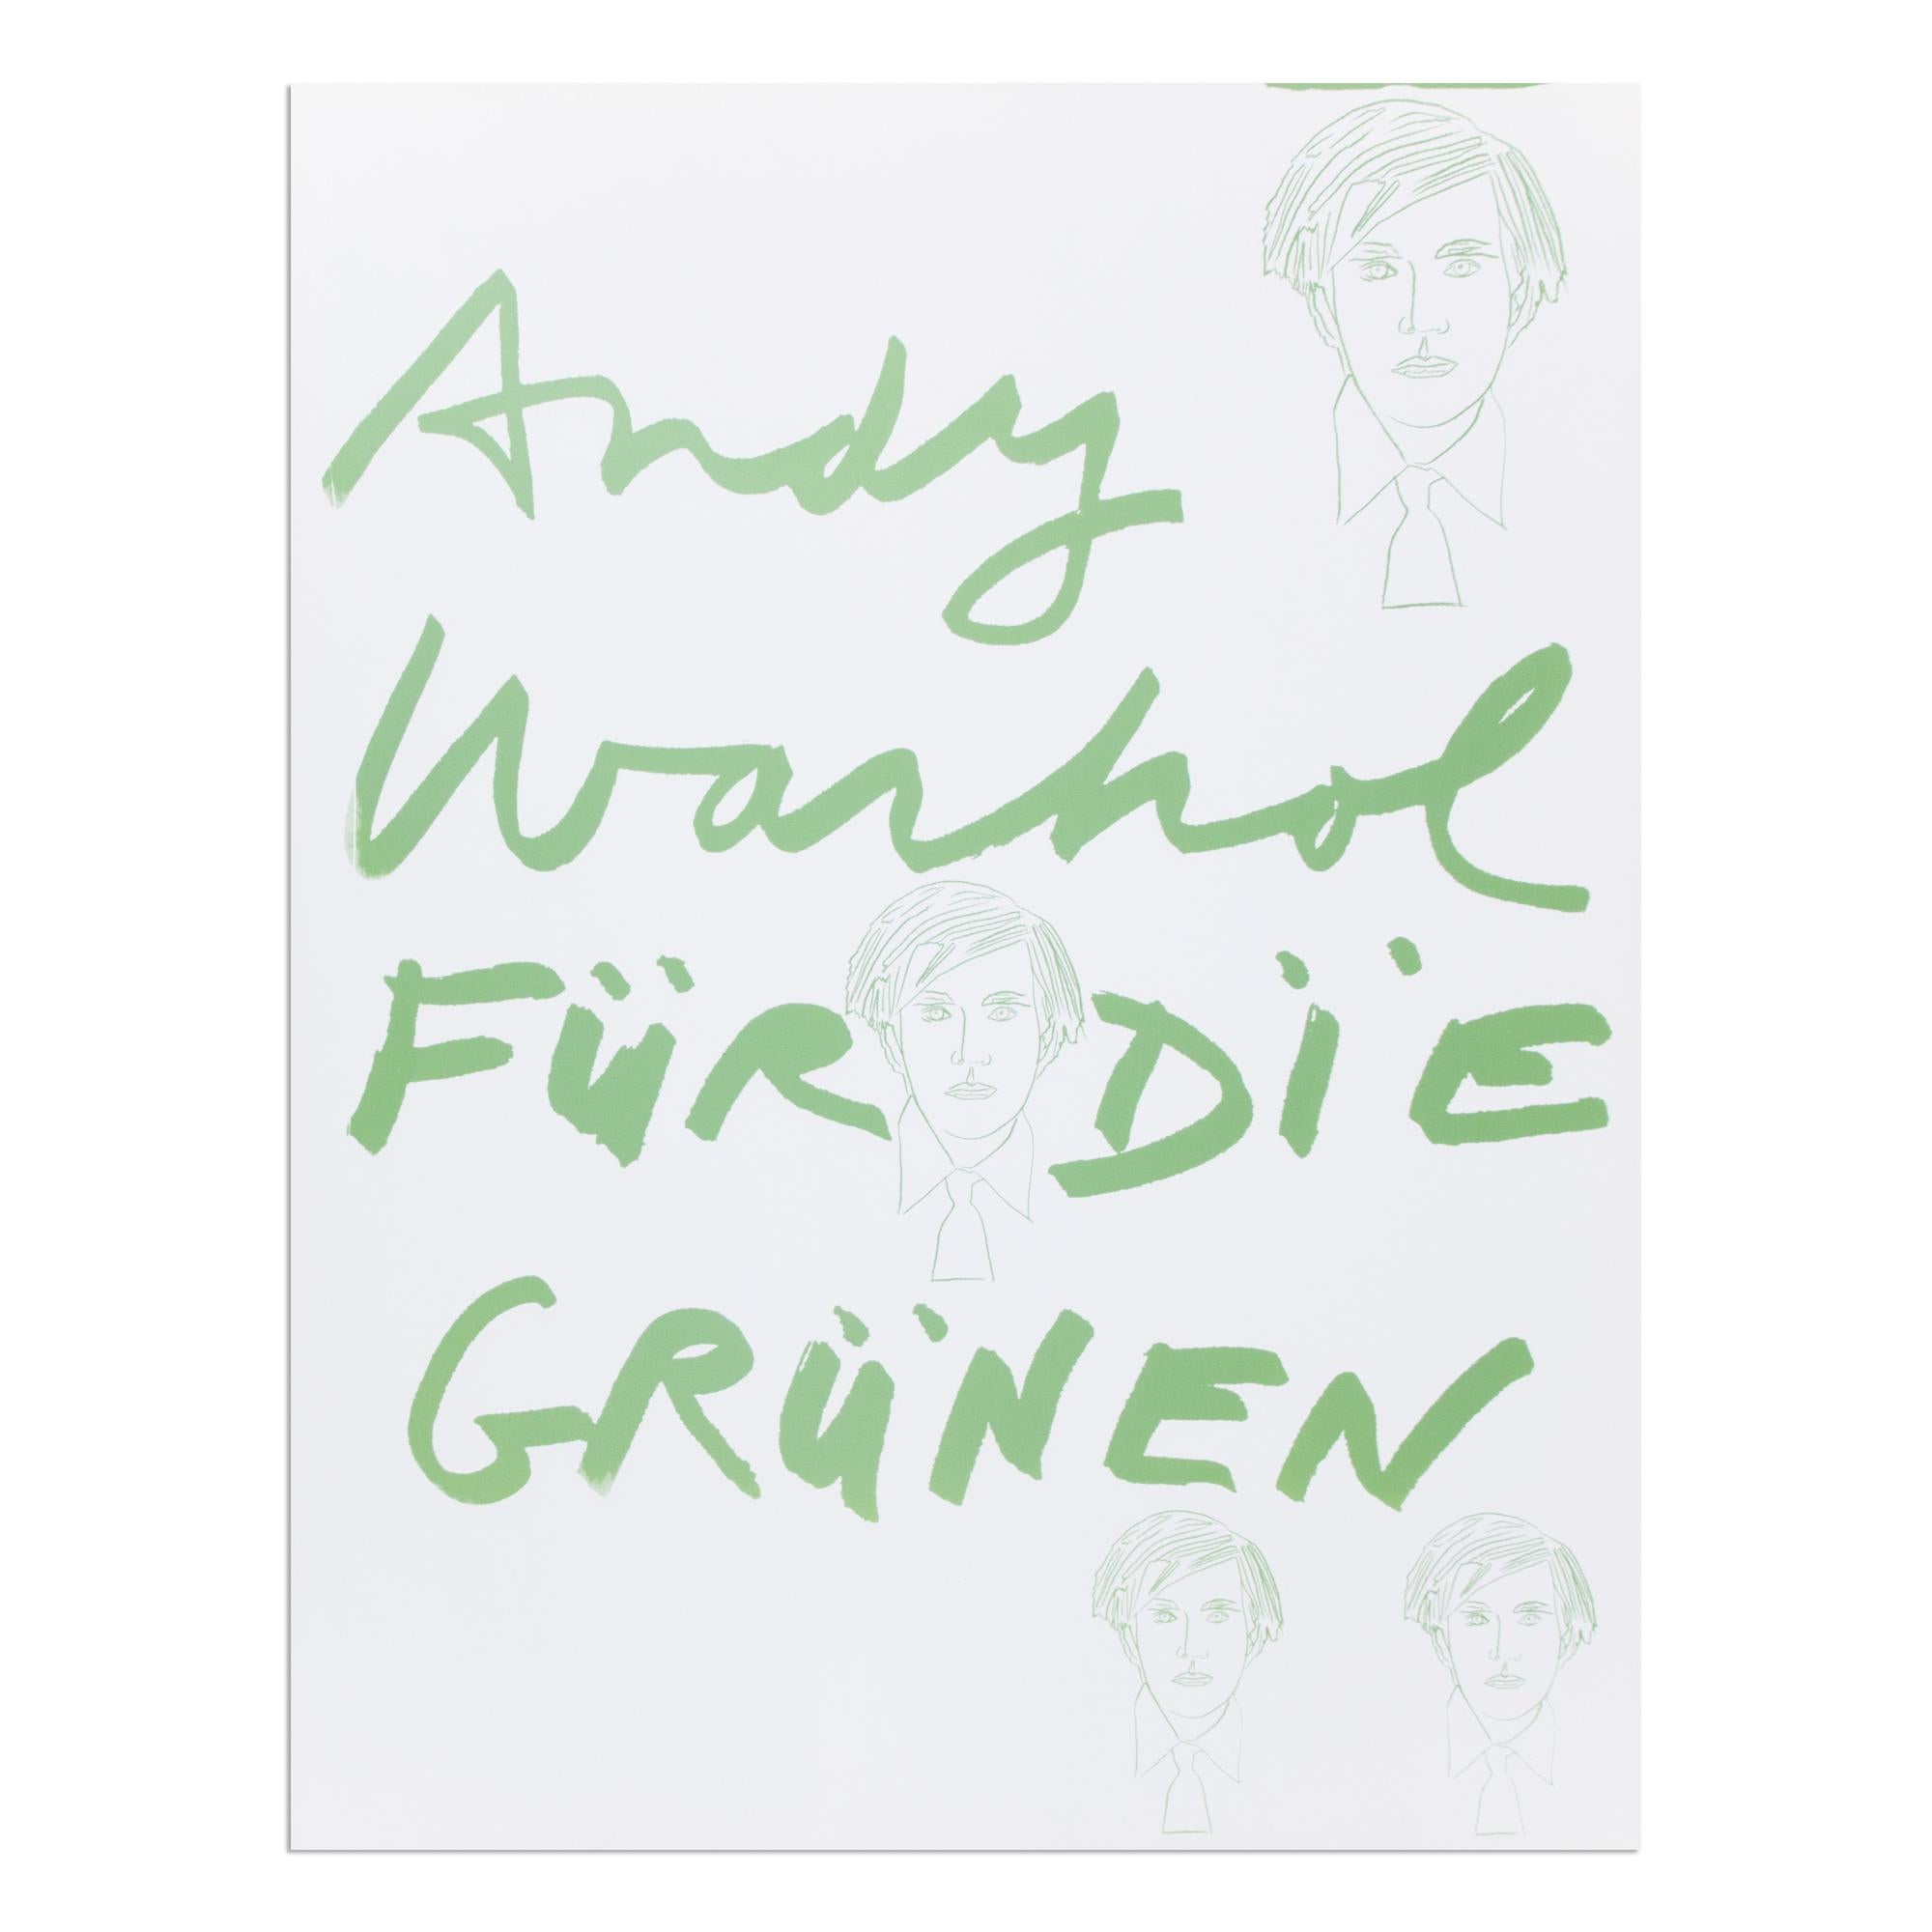 Andy Warhol, Für die Grünen - Siebdruck von 1980, Pop Art